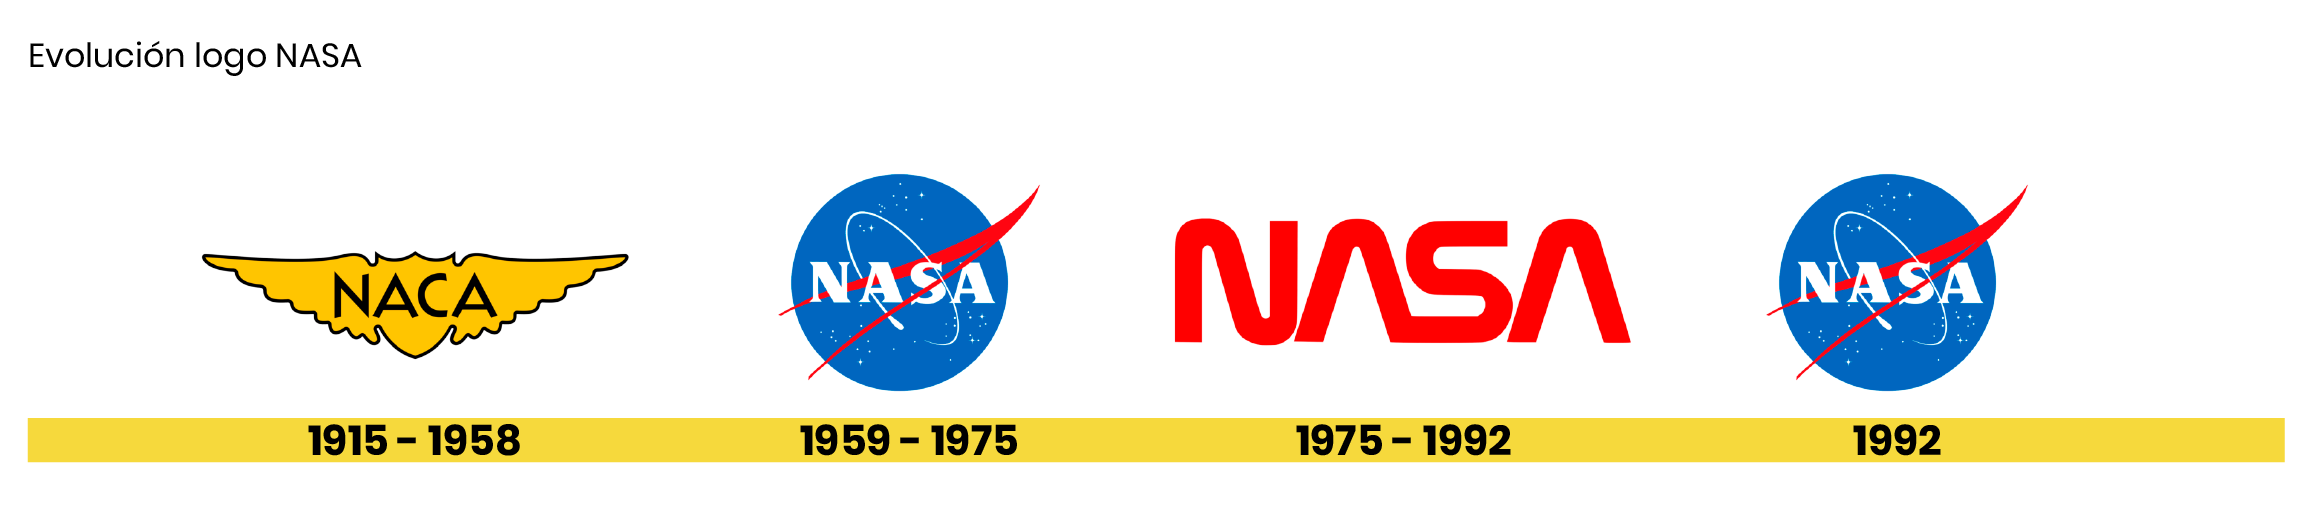 isologos-redondos-NASA-evolución